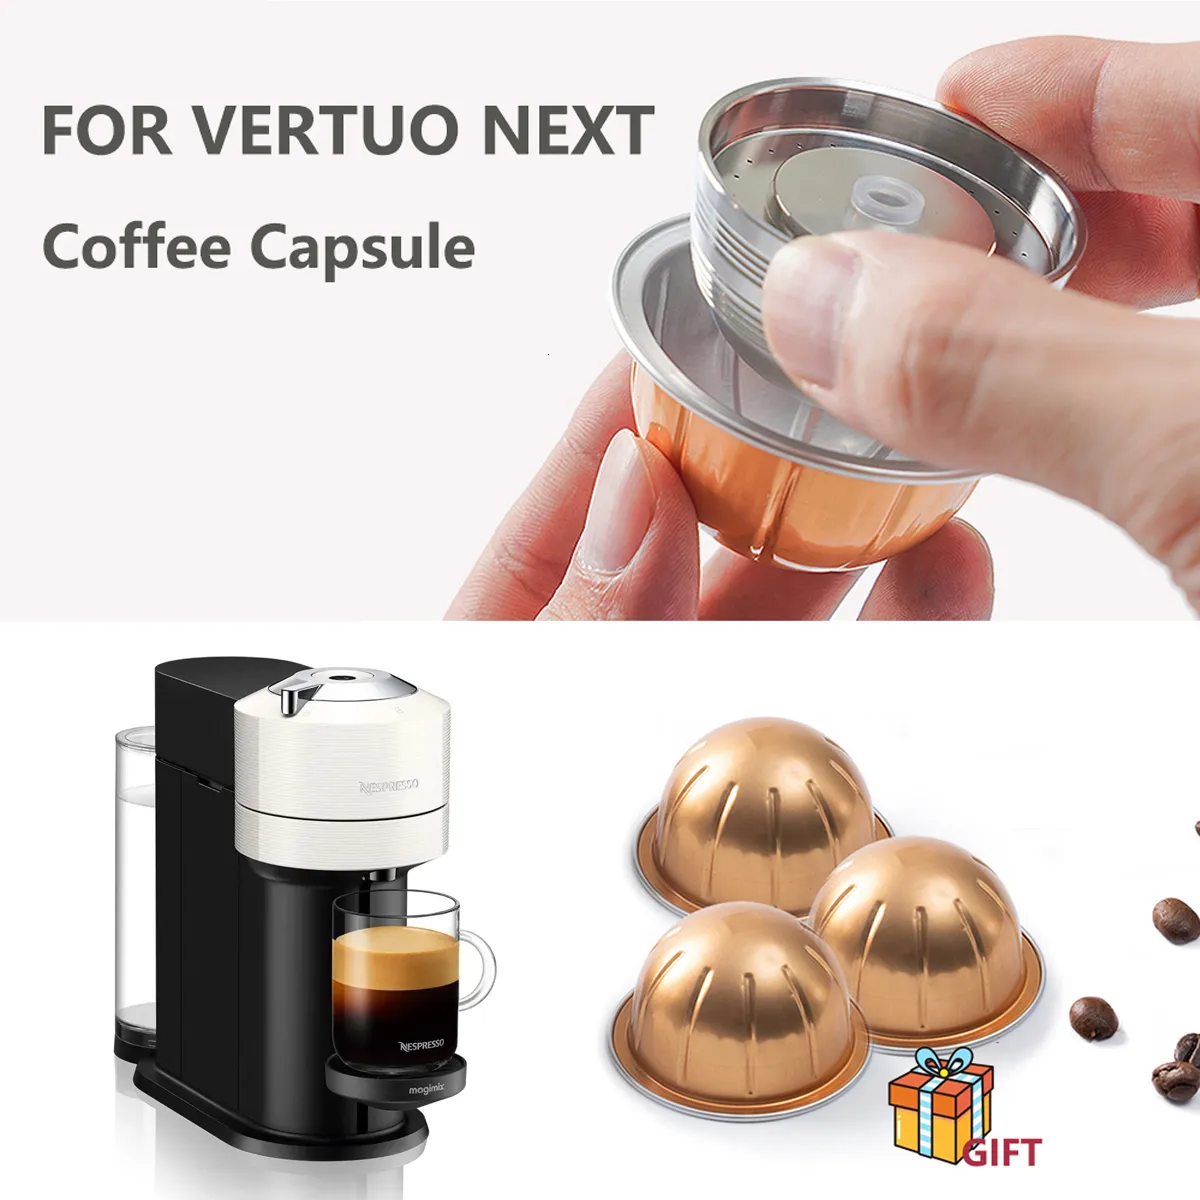 Cápsula de café de metal de acero inoxidable solo compatible con cápsulas  de café Vertuo NEXT Nespresso reutilizables solo para máquina Vertuo Next